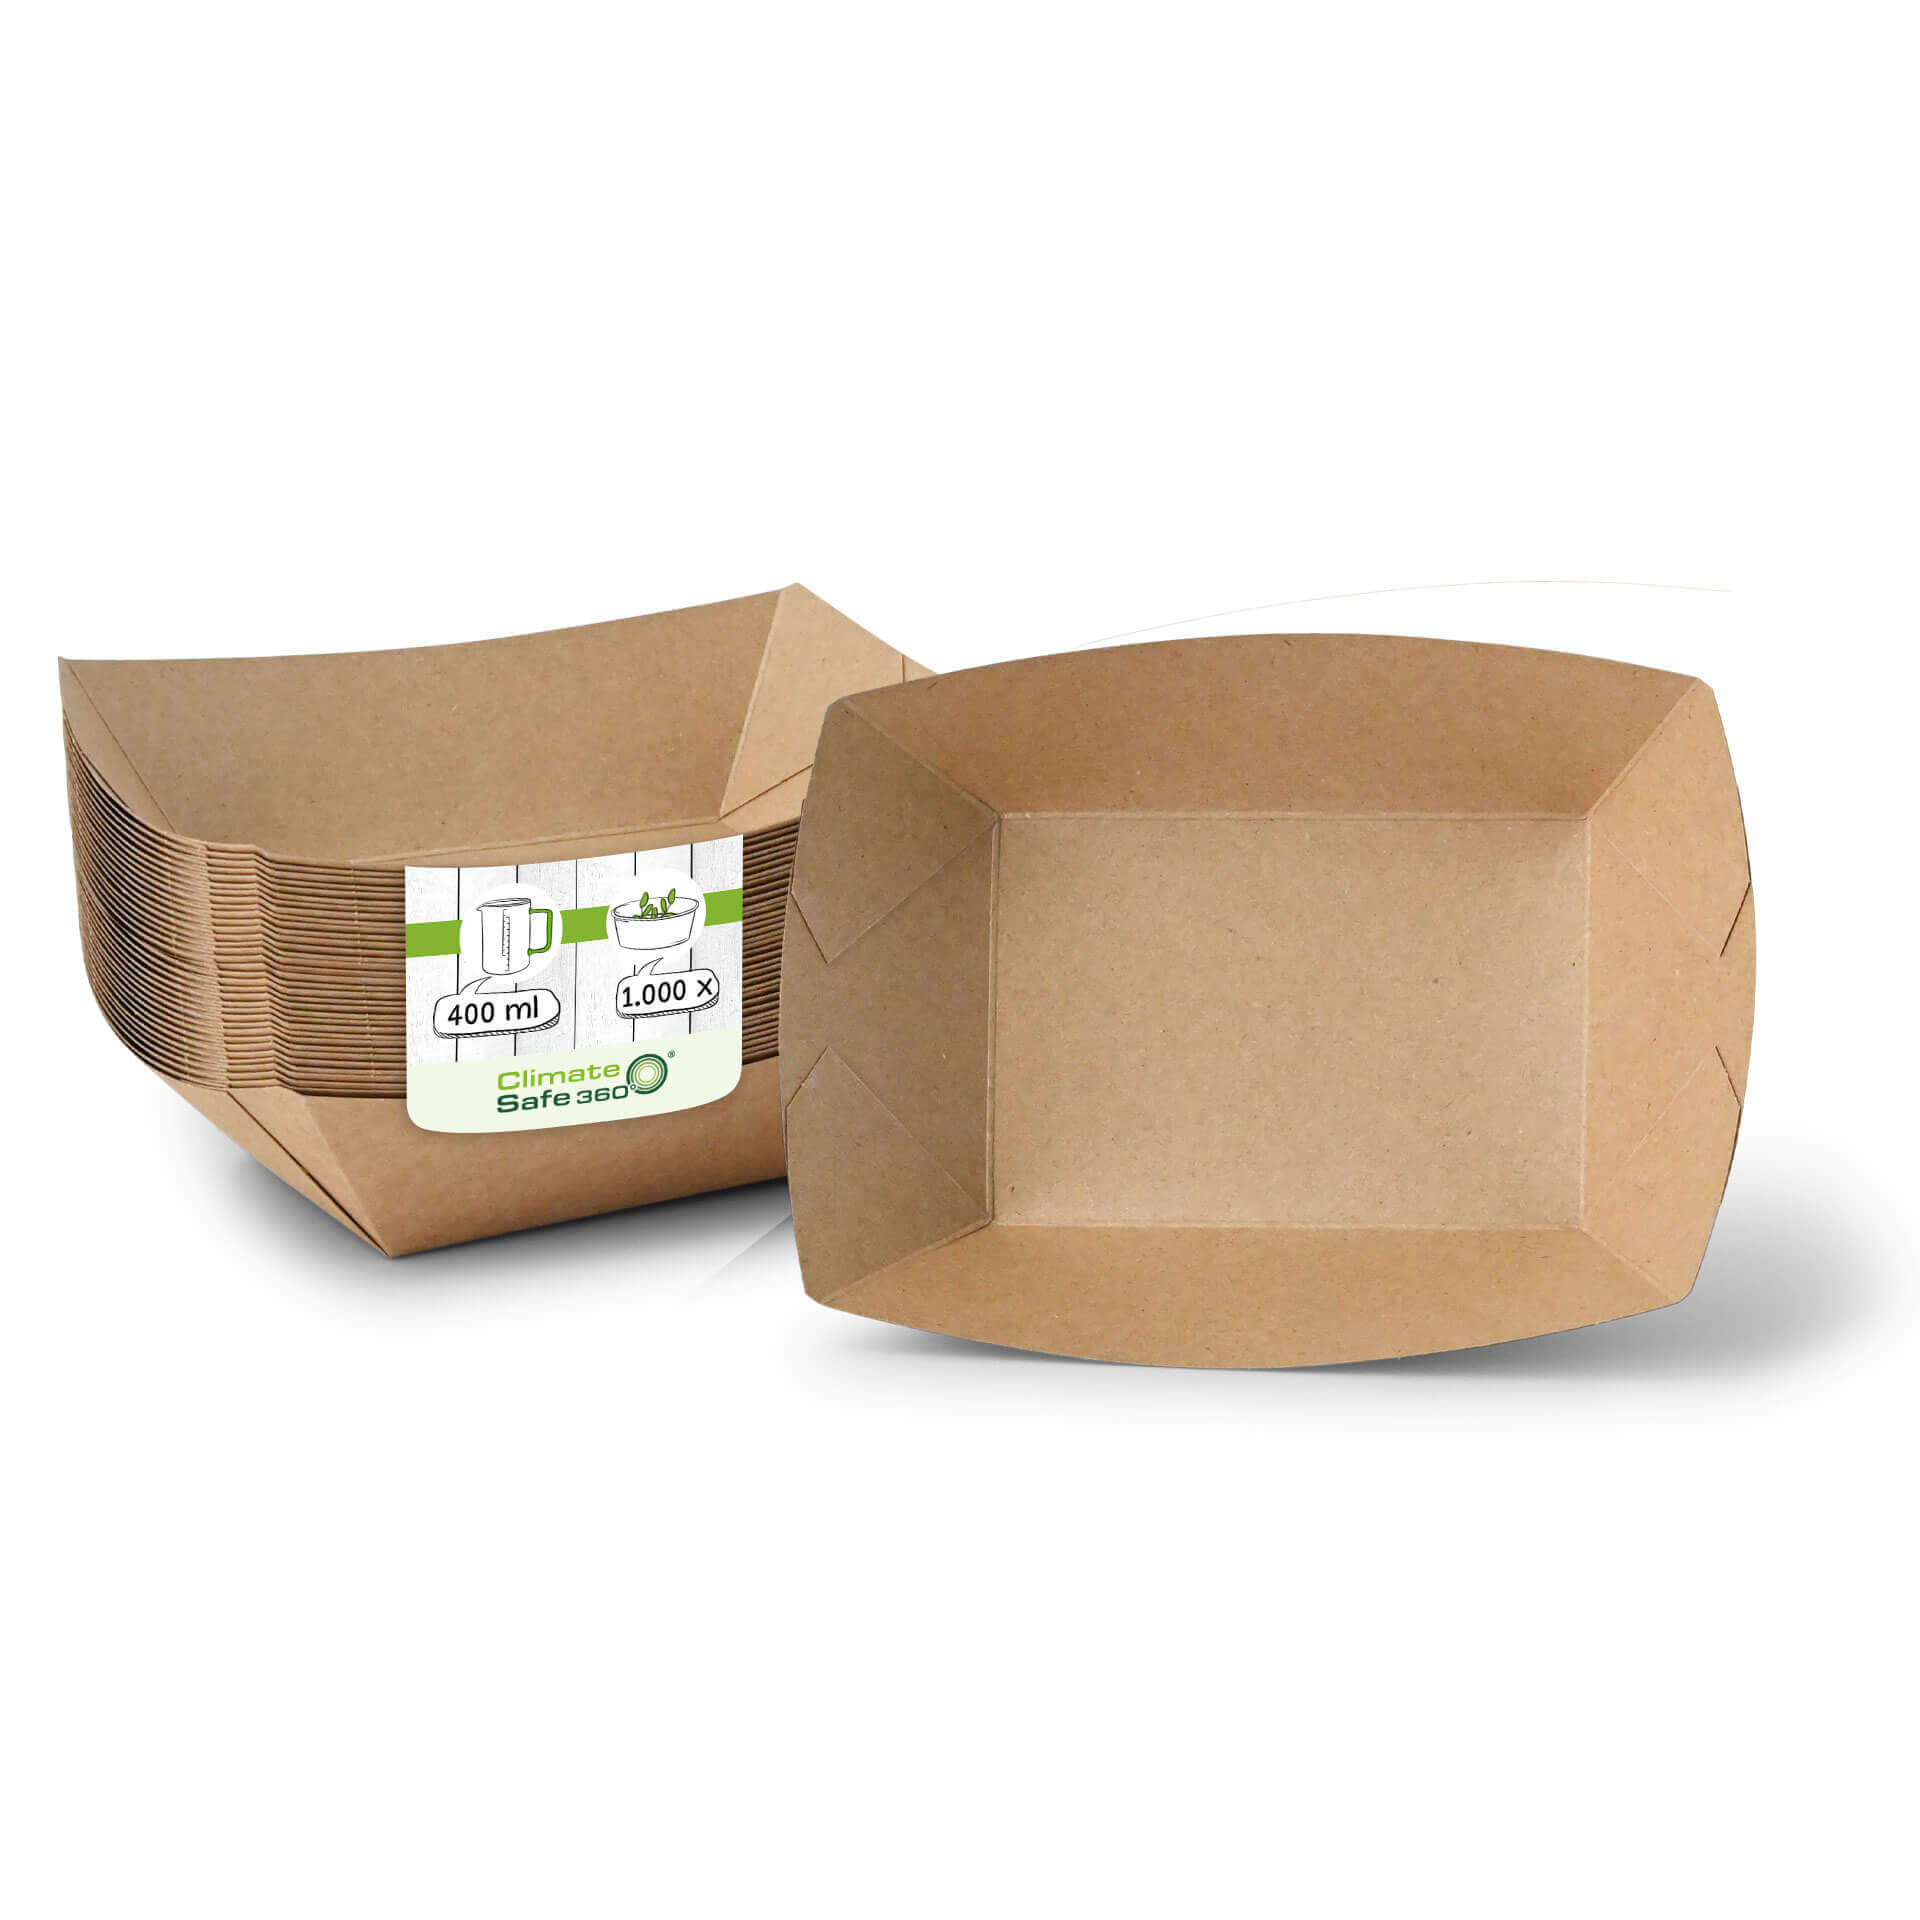 Snackschalen aus Karton (Premium) 400 ml, braun, bio-beschichtet